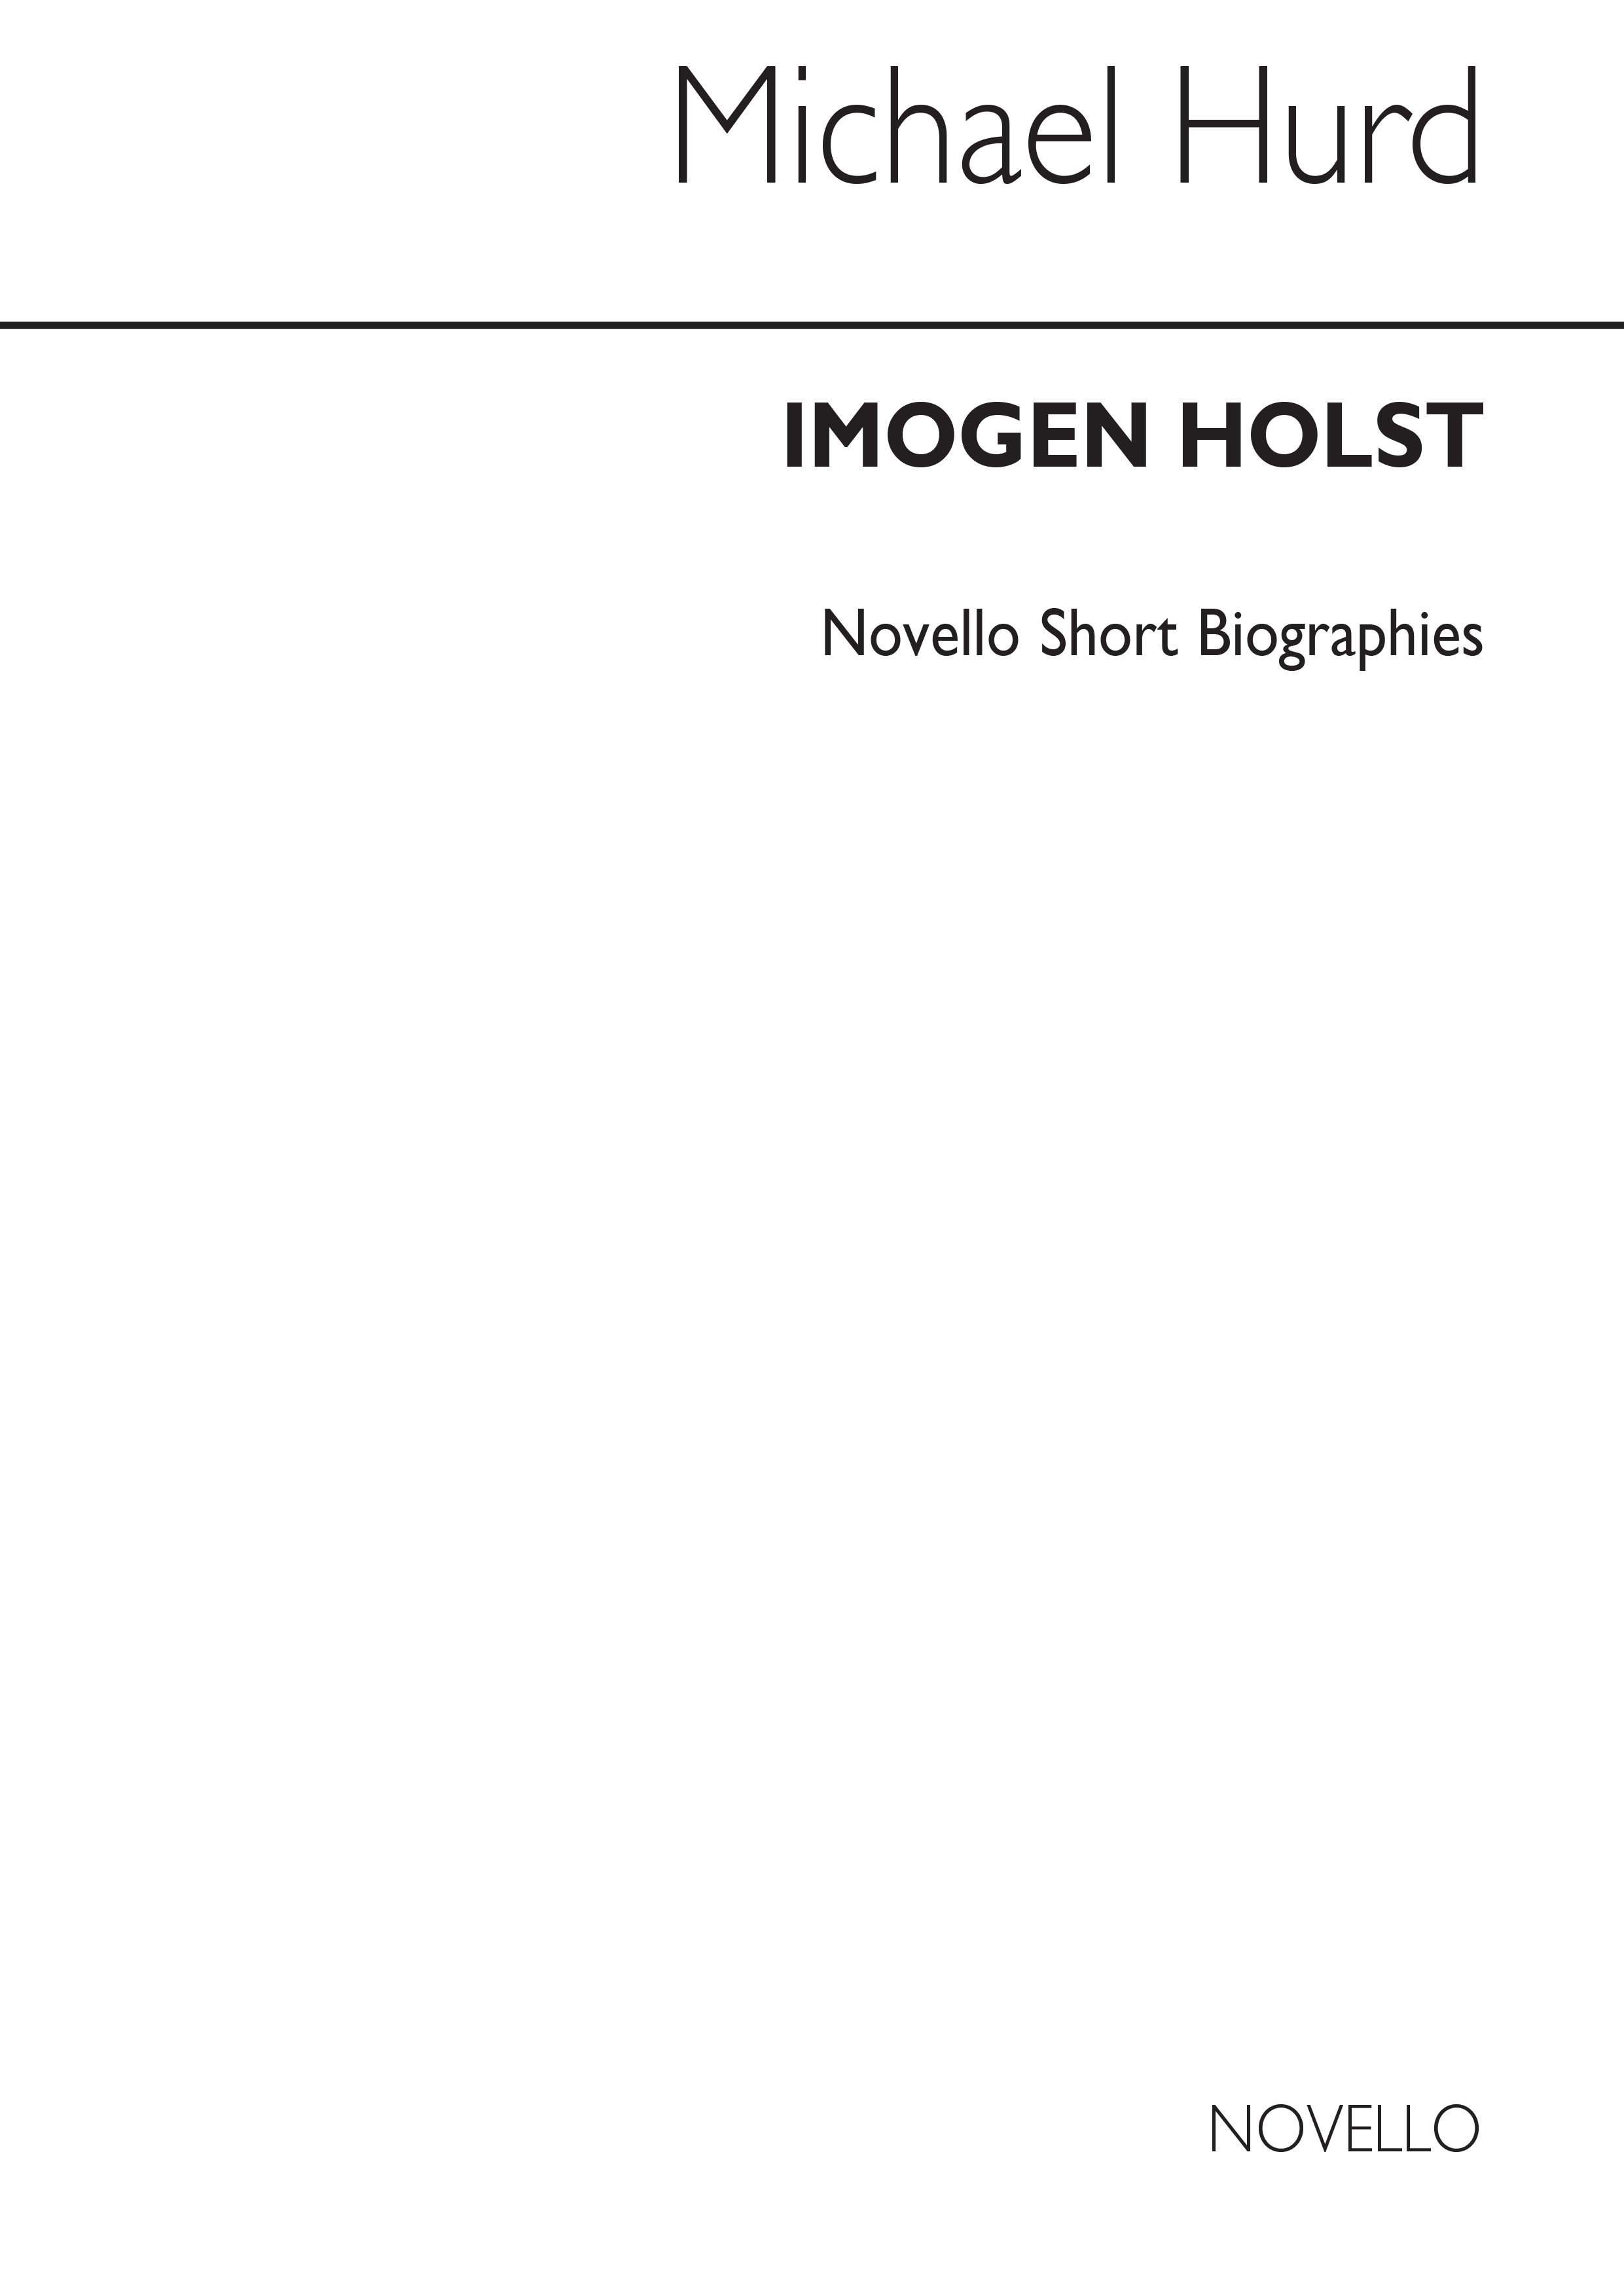 Gustav Holst: Gustav Holst: Novello Short Biography: Biography